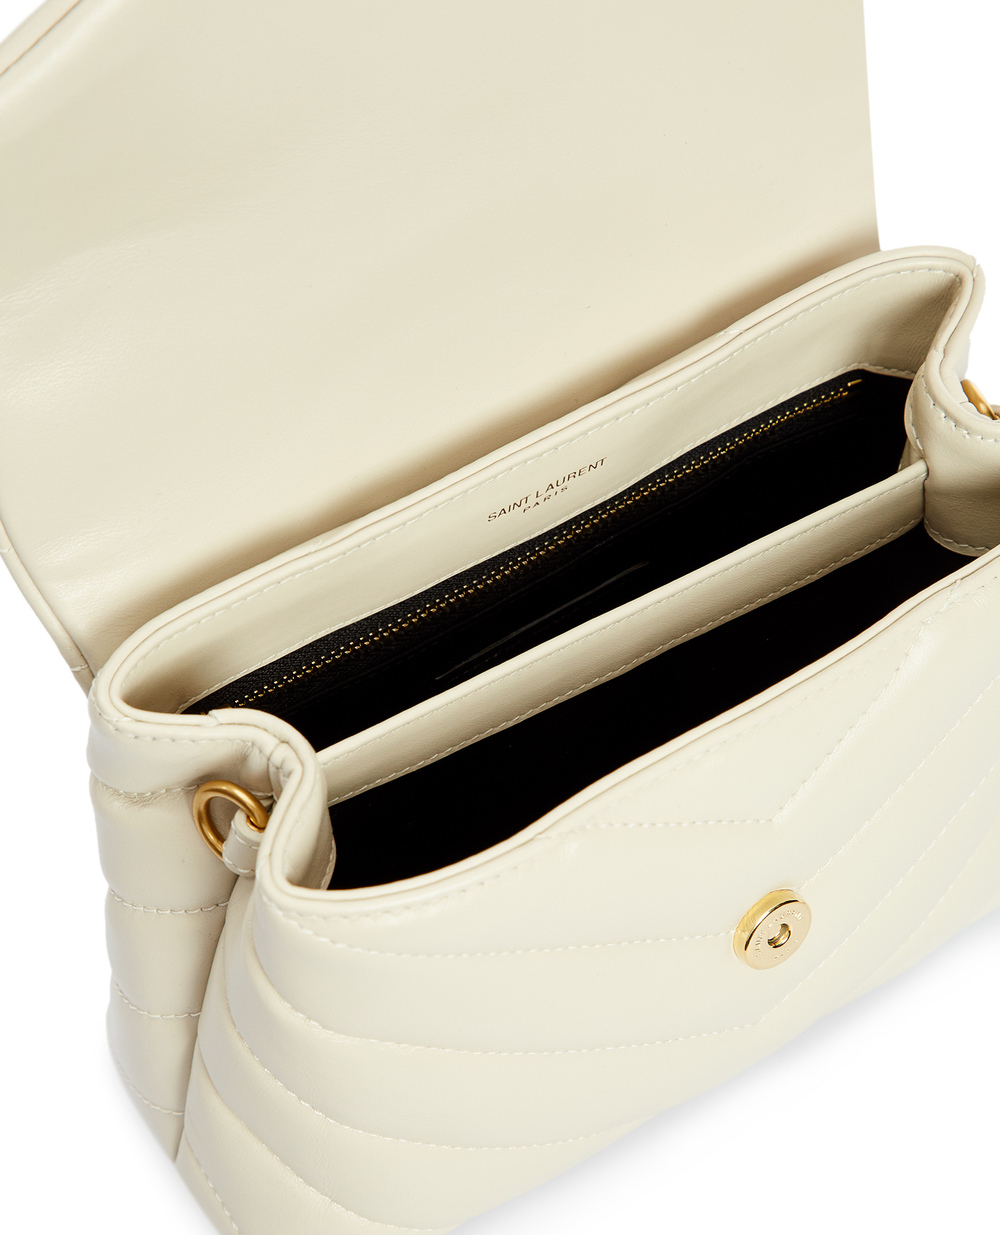 Кожаная сумка Loulou Toy Saint Laurent 678401-DV707, белый цвет • Купить в интернет-магазине Kameron